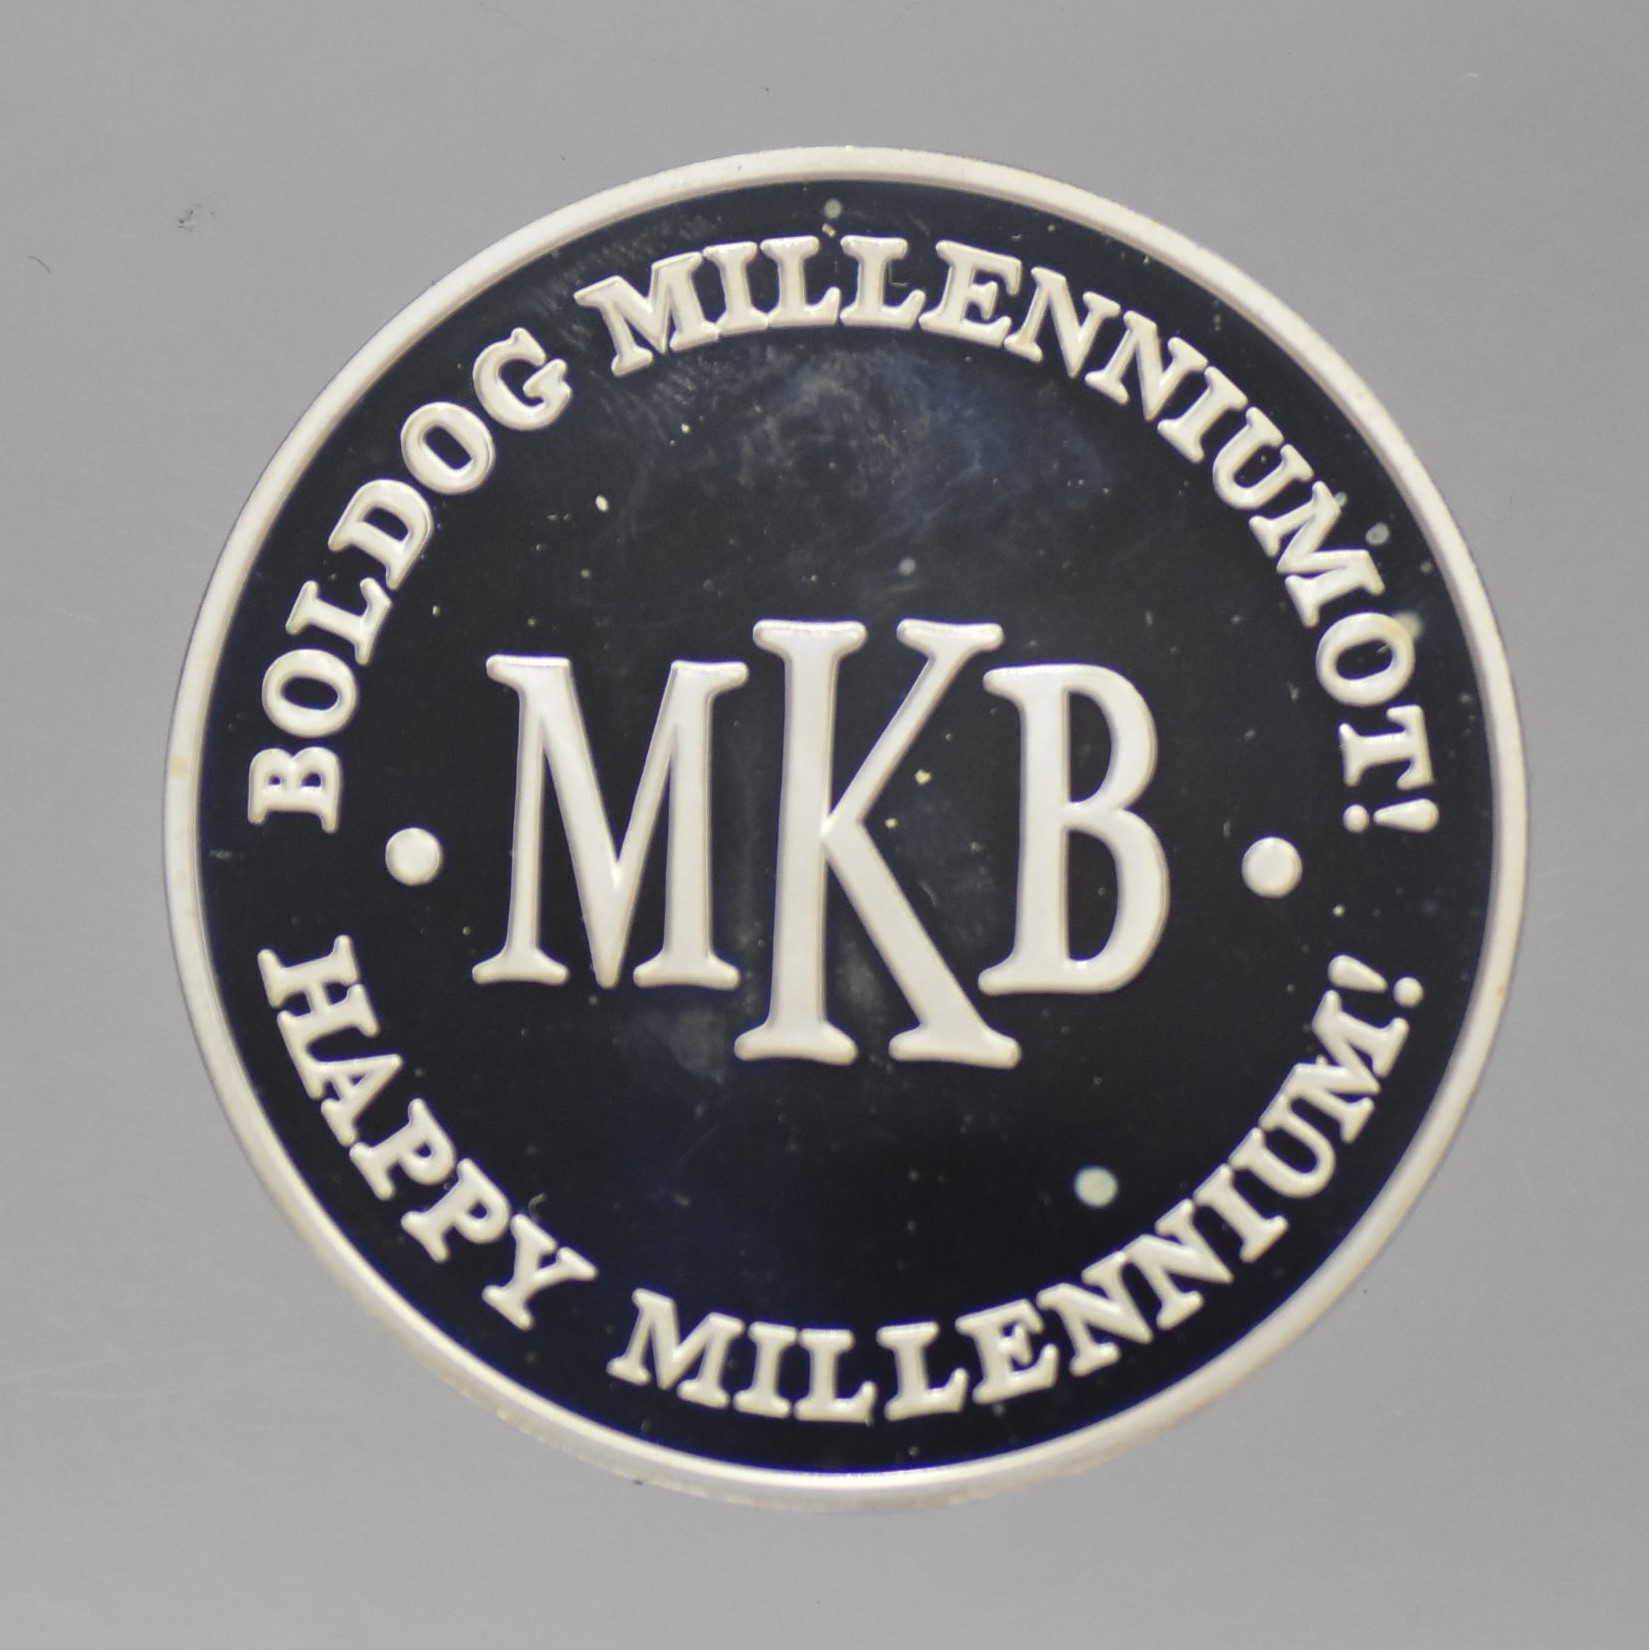 2000 MKB - Millennium színezüst érem